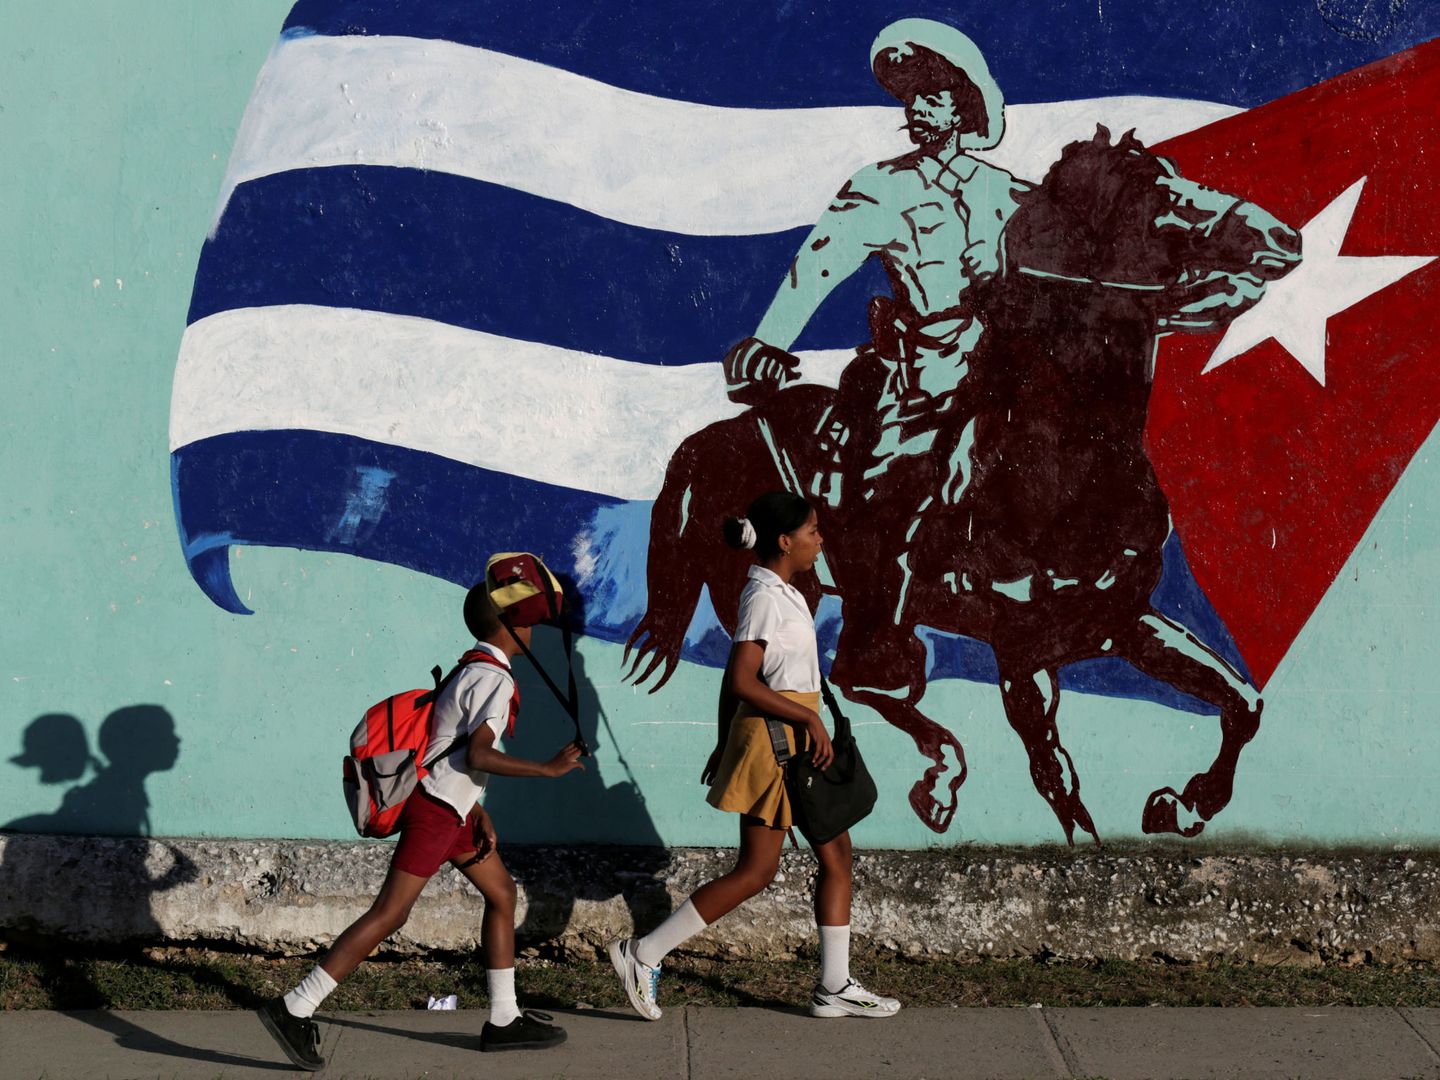 Estudiantes cubanos pasan delante de un mural en La Habana, el 22 de noviembre de 2016 (Reuters)